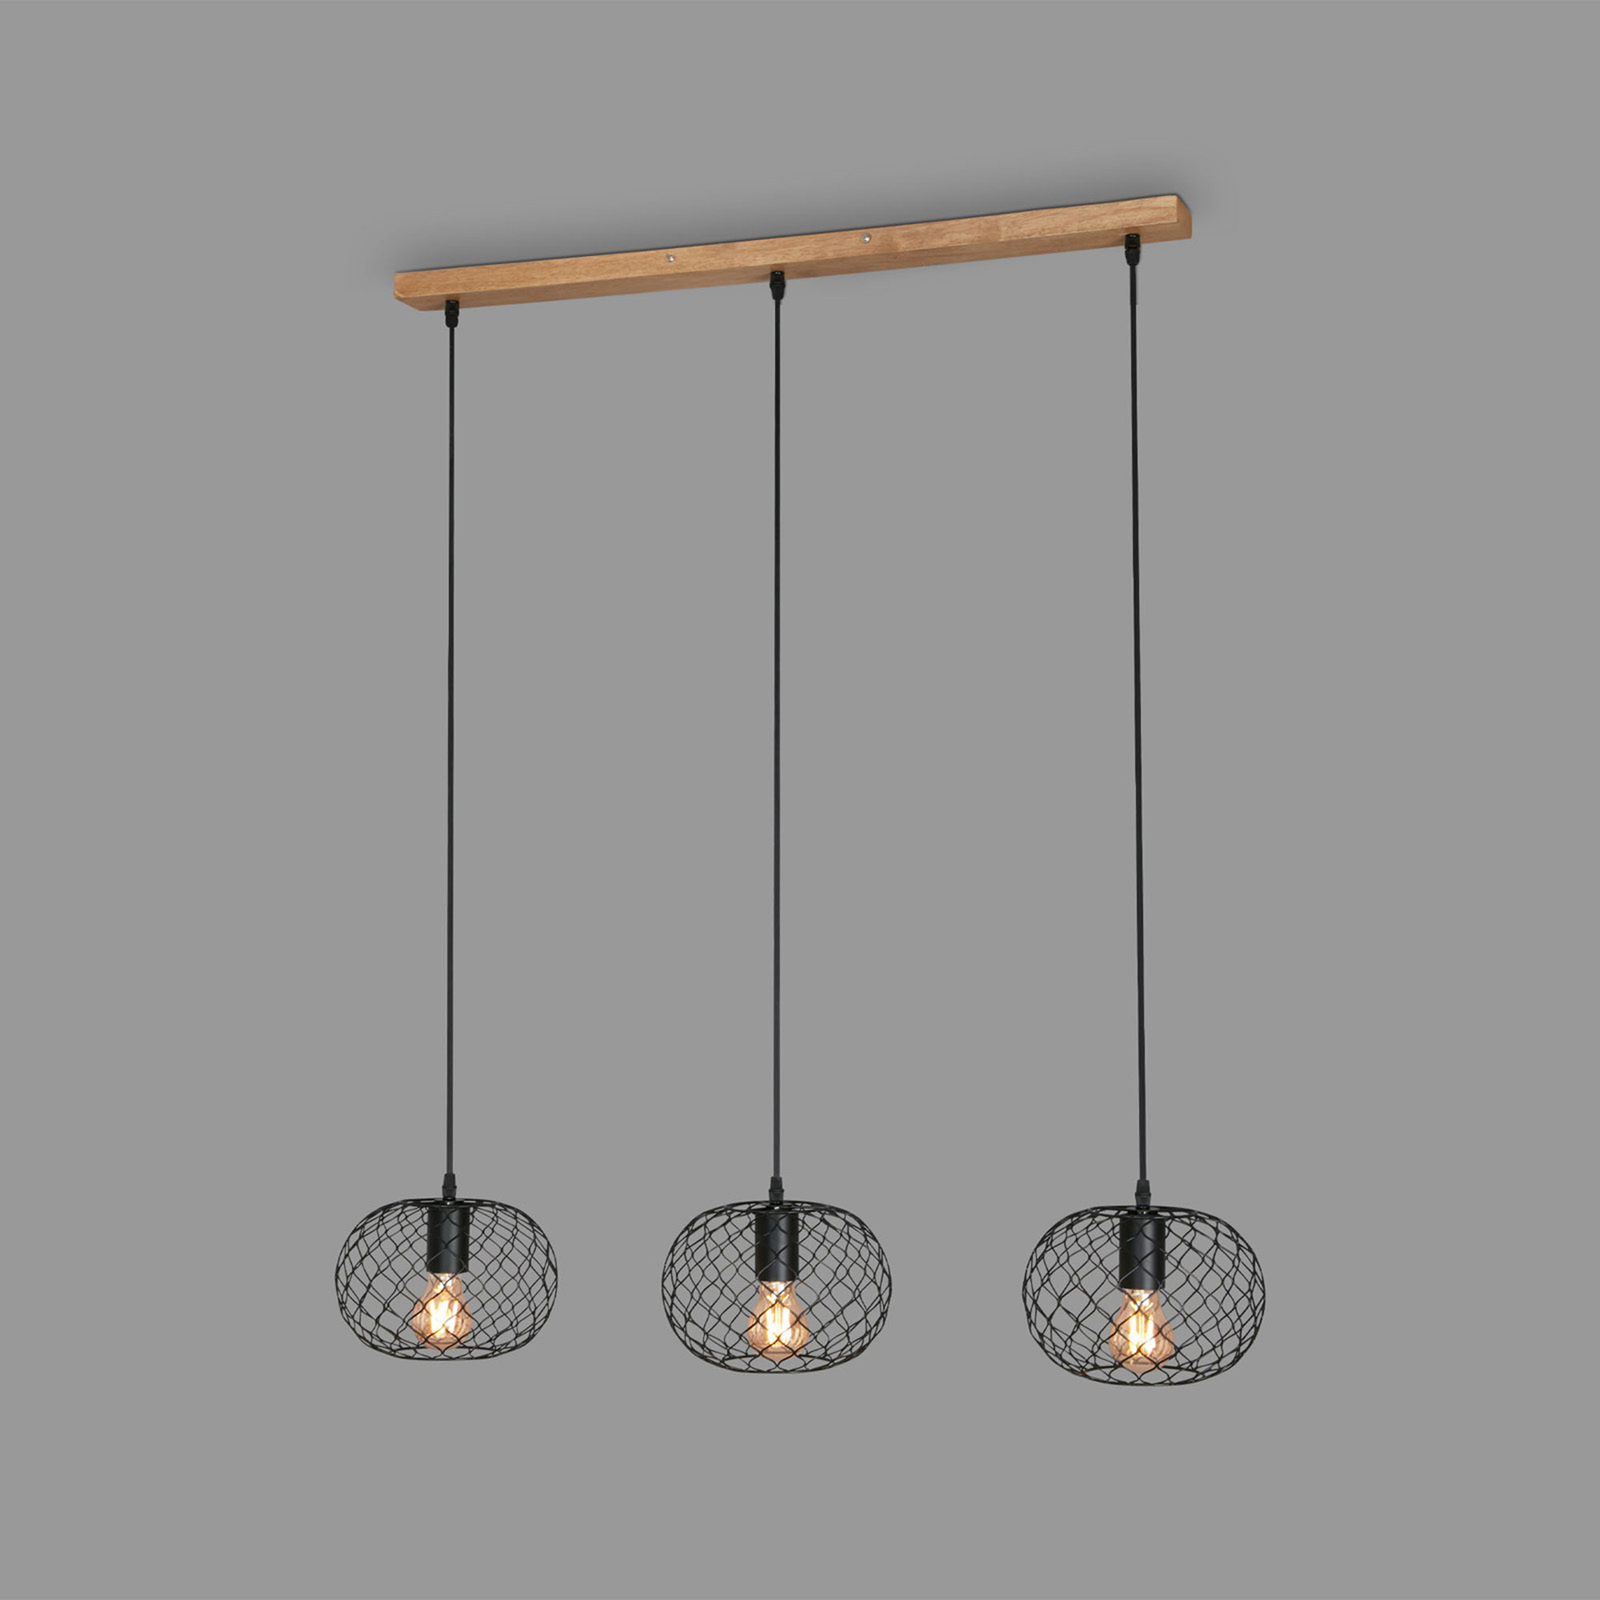 Winki Vintage hanging light, black/wood, 3-bulb